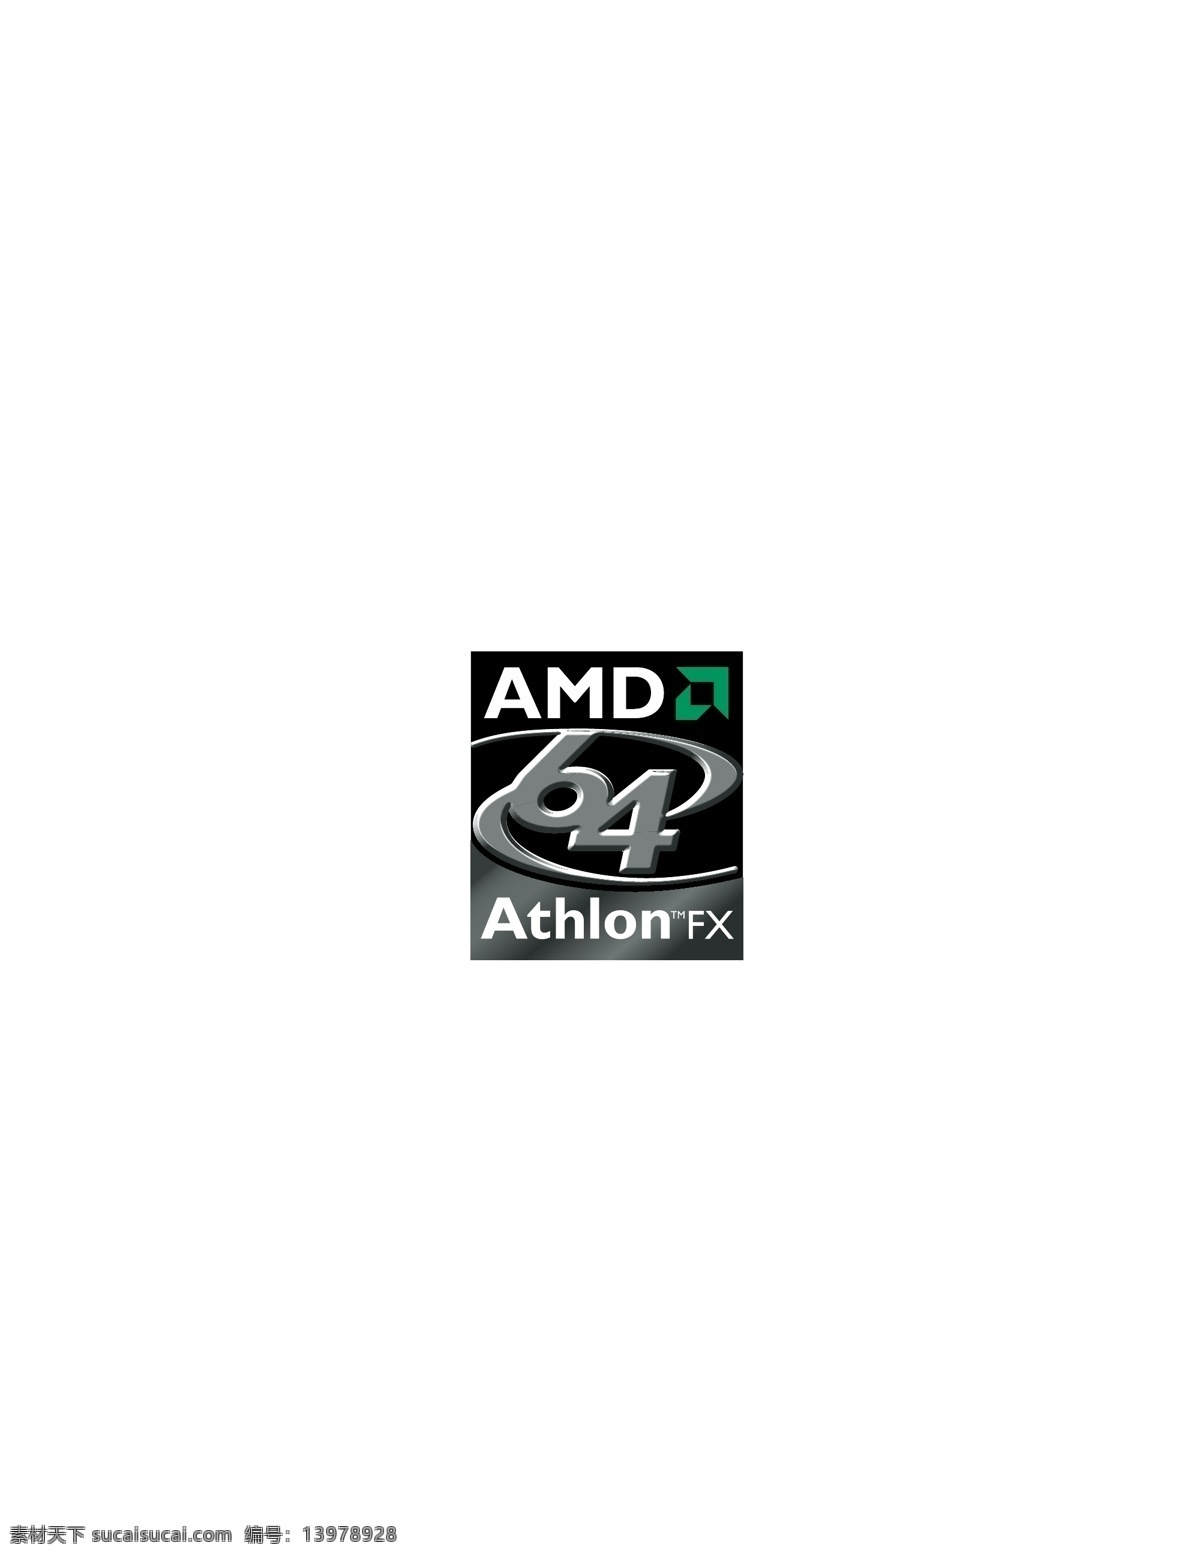 logo大全 logo 设计欣赏 商业矢量 矢量下载 amd64athlonfx1 amd athlonfx athlonfx1 电脑硬件 标志 标志设计 欣赏 网页矢量